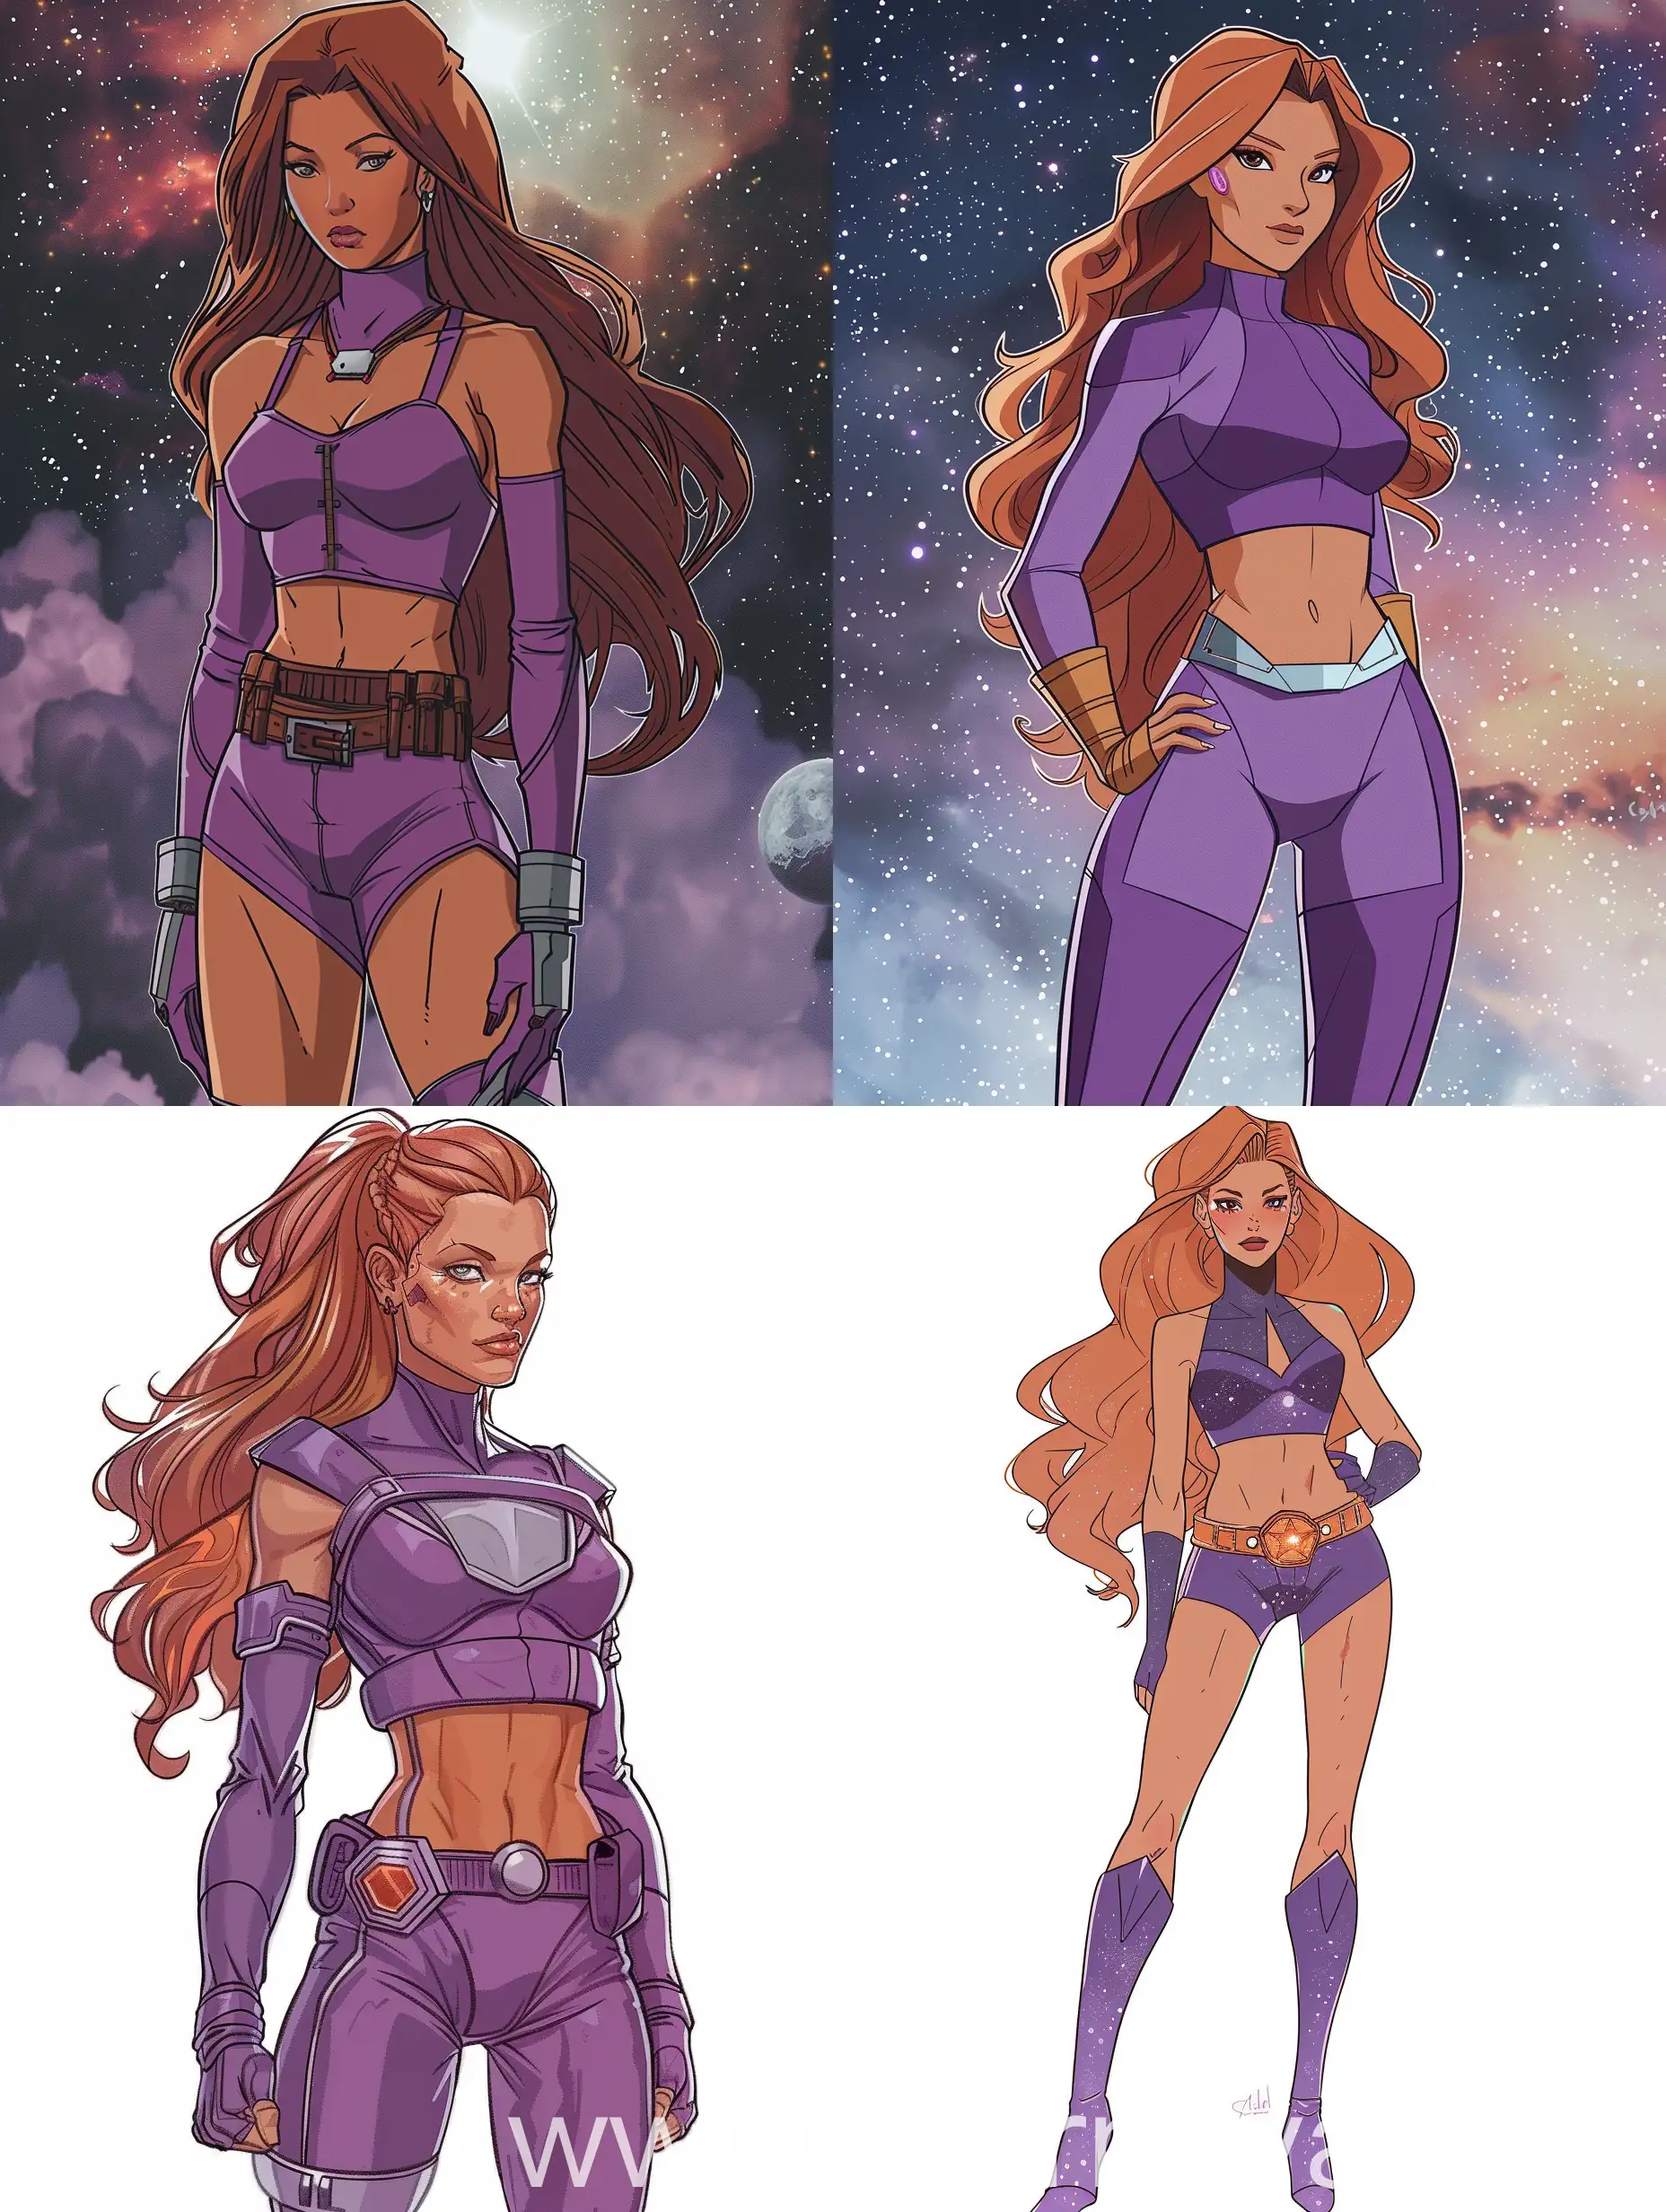 Retro-Futuristic-Heroine-Starfire-in-Cosmos-SciFi-Woman-in-Starfleet-Uniform